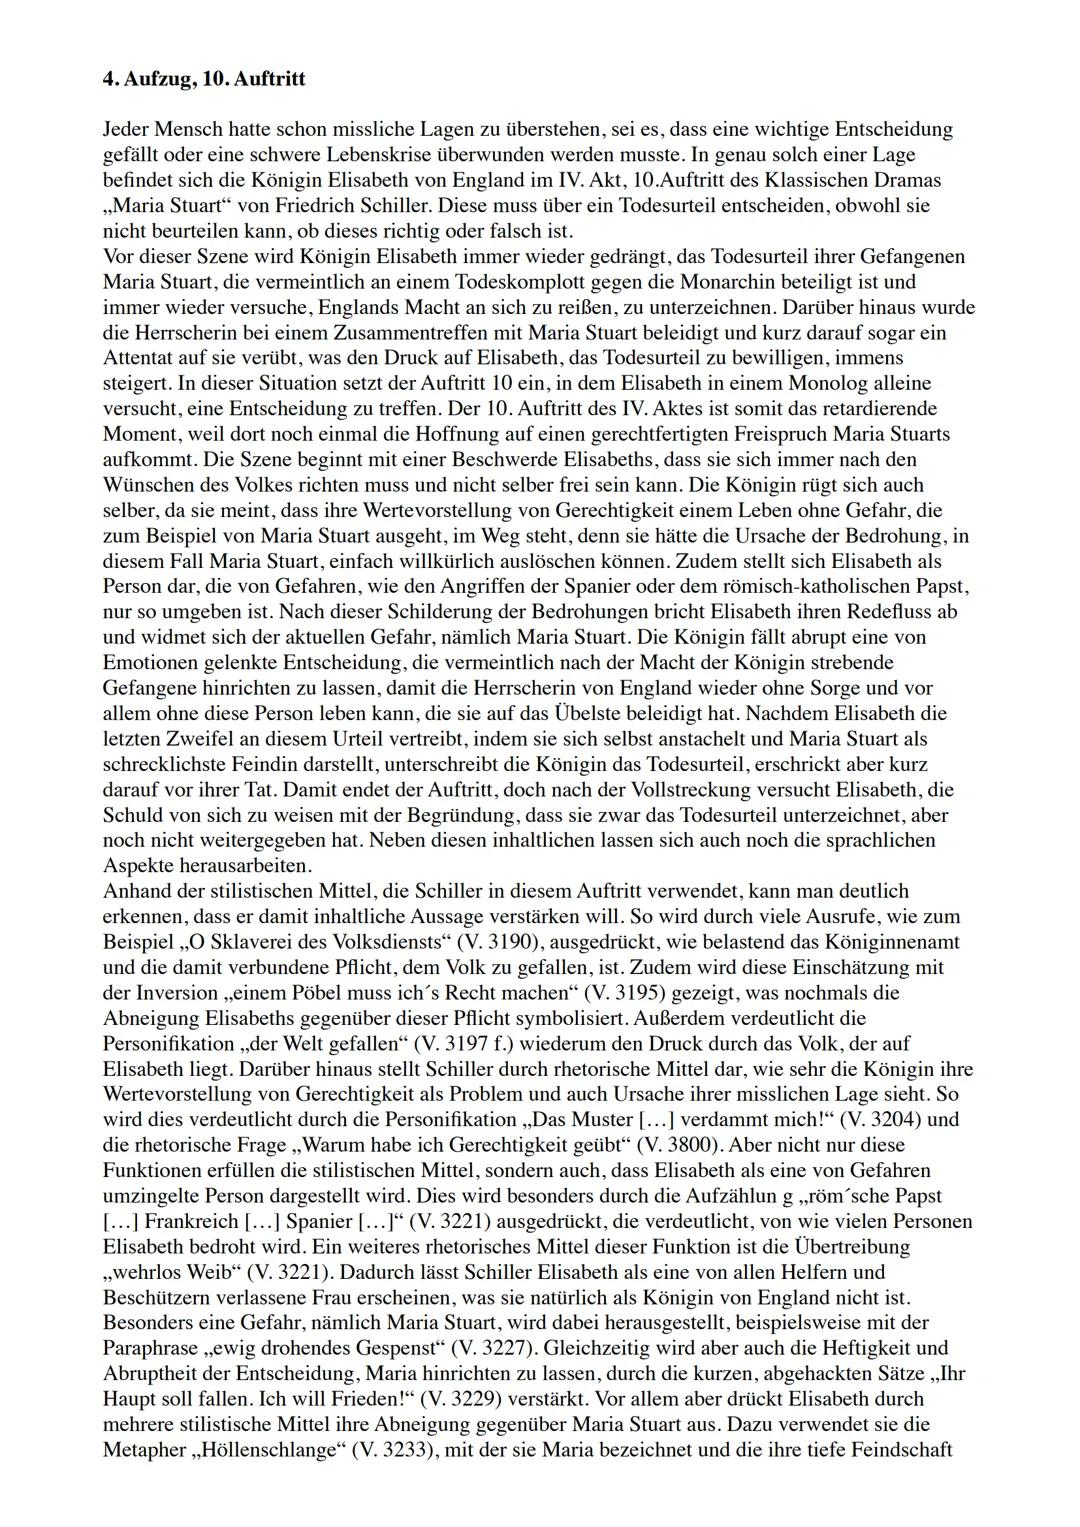 Dramen - Analyse
Maria Stuart:
-
von Friedrich Schiller
-
Vertreter des Sturm & Drangs
- ab 1799 mit Goethe Vertreter Weimarer Klassik
- im 